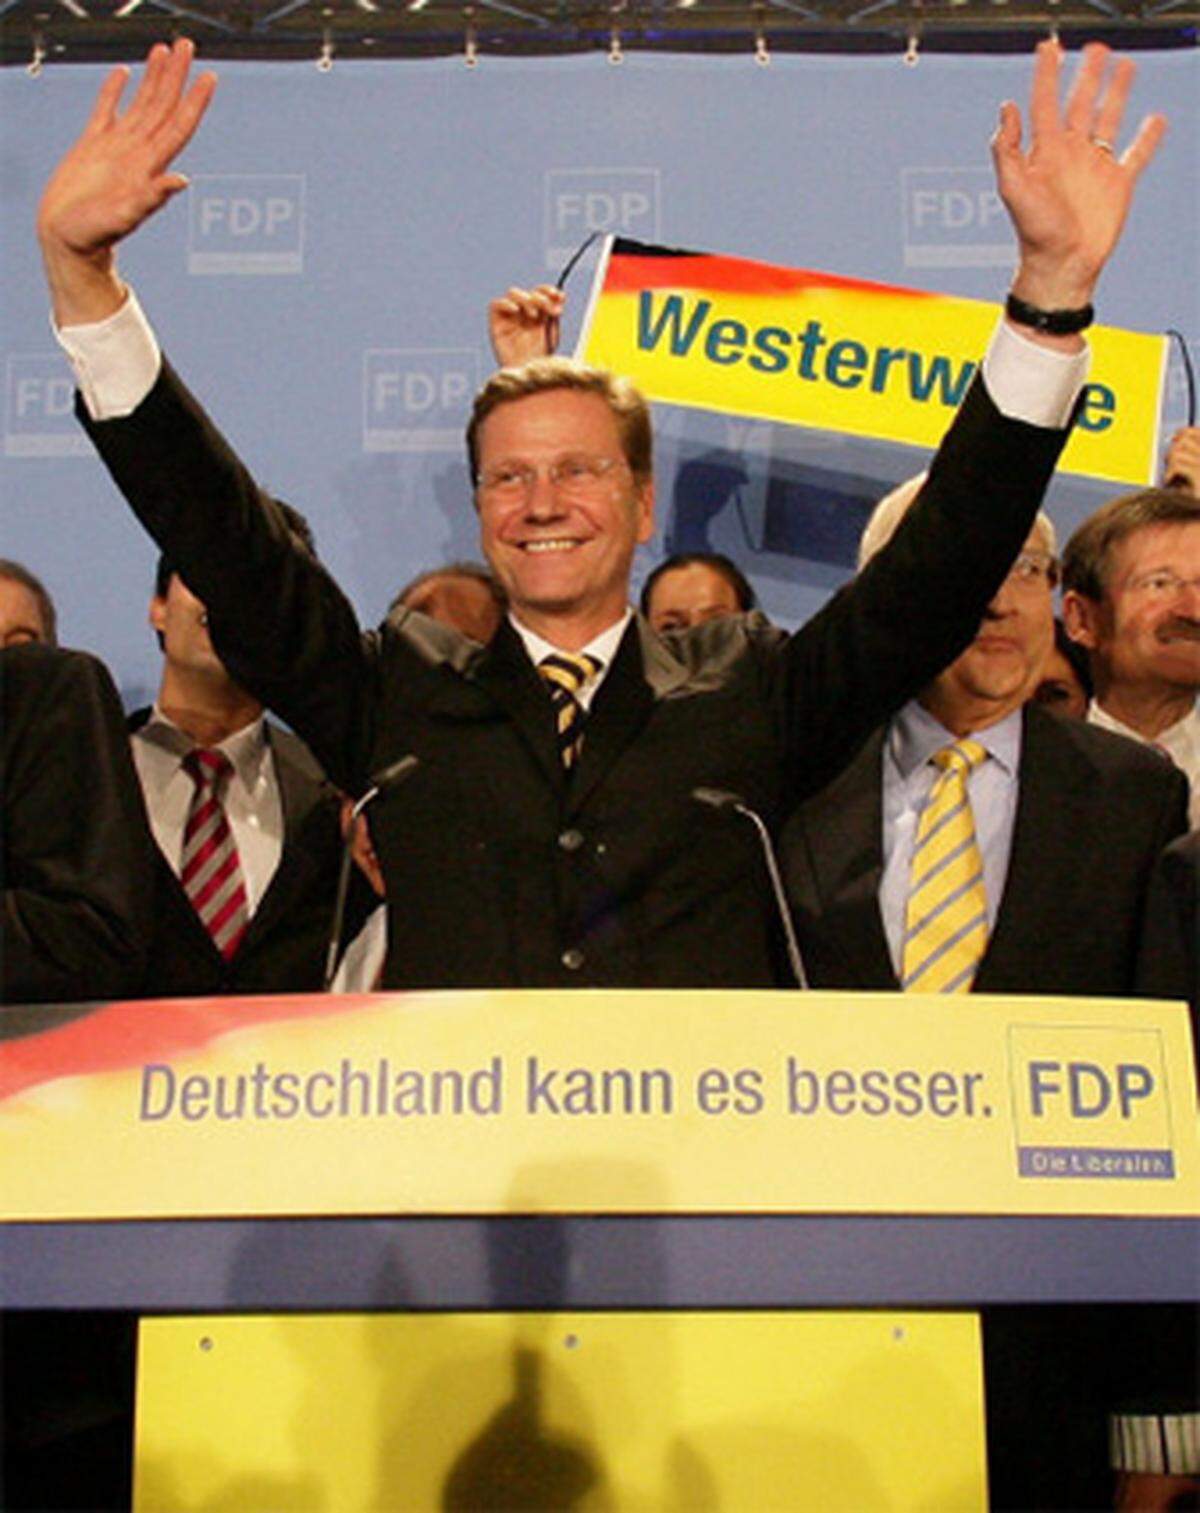 Guido Westerwelle ist am Ziel: "Wir wollen Deutschland jetzt mitregieren", rief der Parteichef der FDP am Wahlabend in der Berliner Parteizentrale. Umringt von der Parteiführung trat der Spitzenkandidat vor die jubelenden Liberalen, nachdem die Hochrechnungen gezeigt hatten, dass die FDP ein Regierungsbündnis mit der Union eingehen kann. Nach vergeblichen Versuchen 2002 und 2005 schafft Westerwelle nun aller Voraussicht nach im dritten Anlauf den Sprung an die Macht.